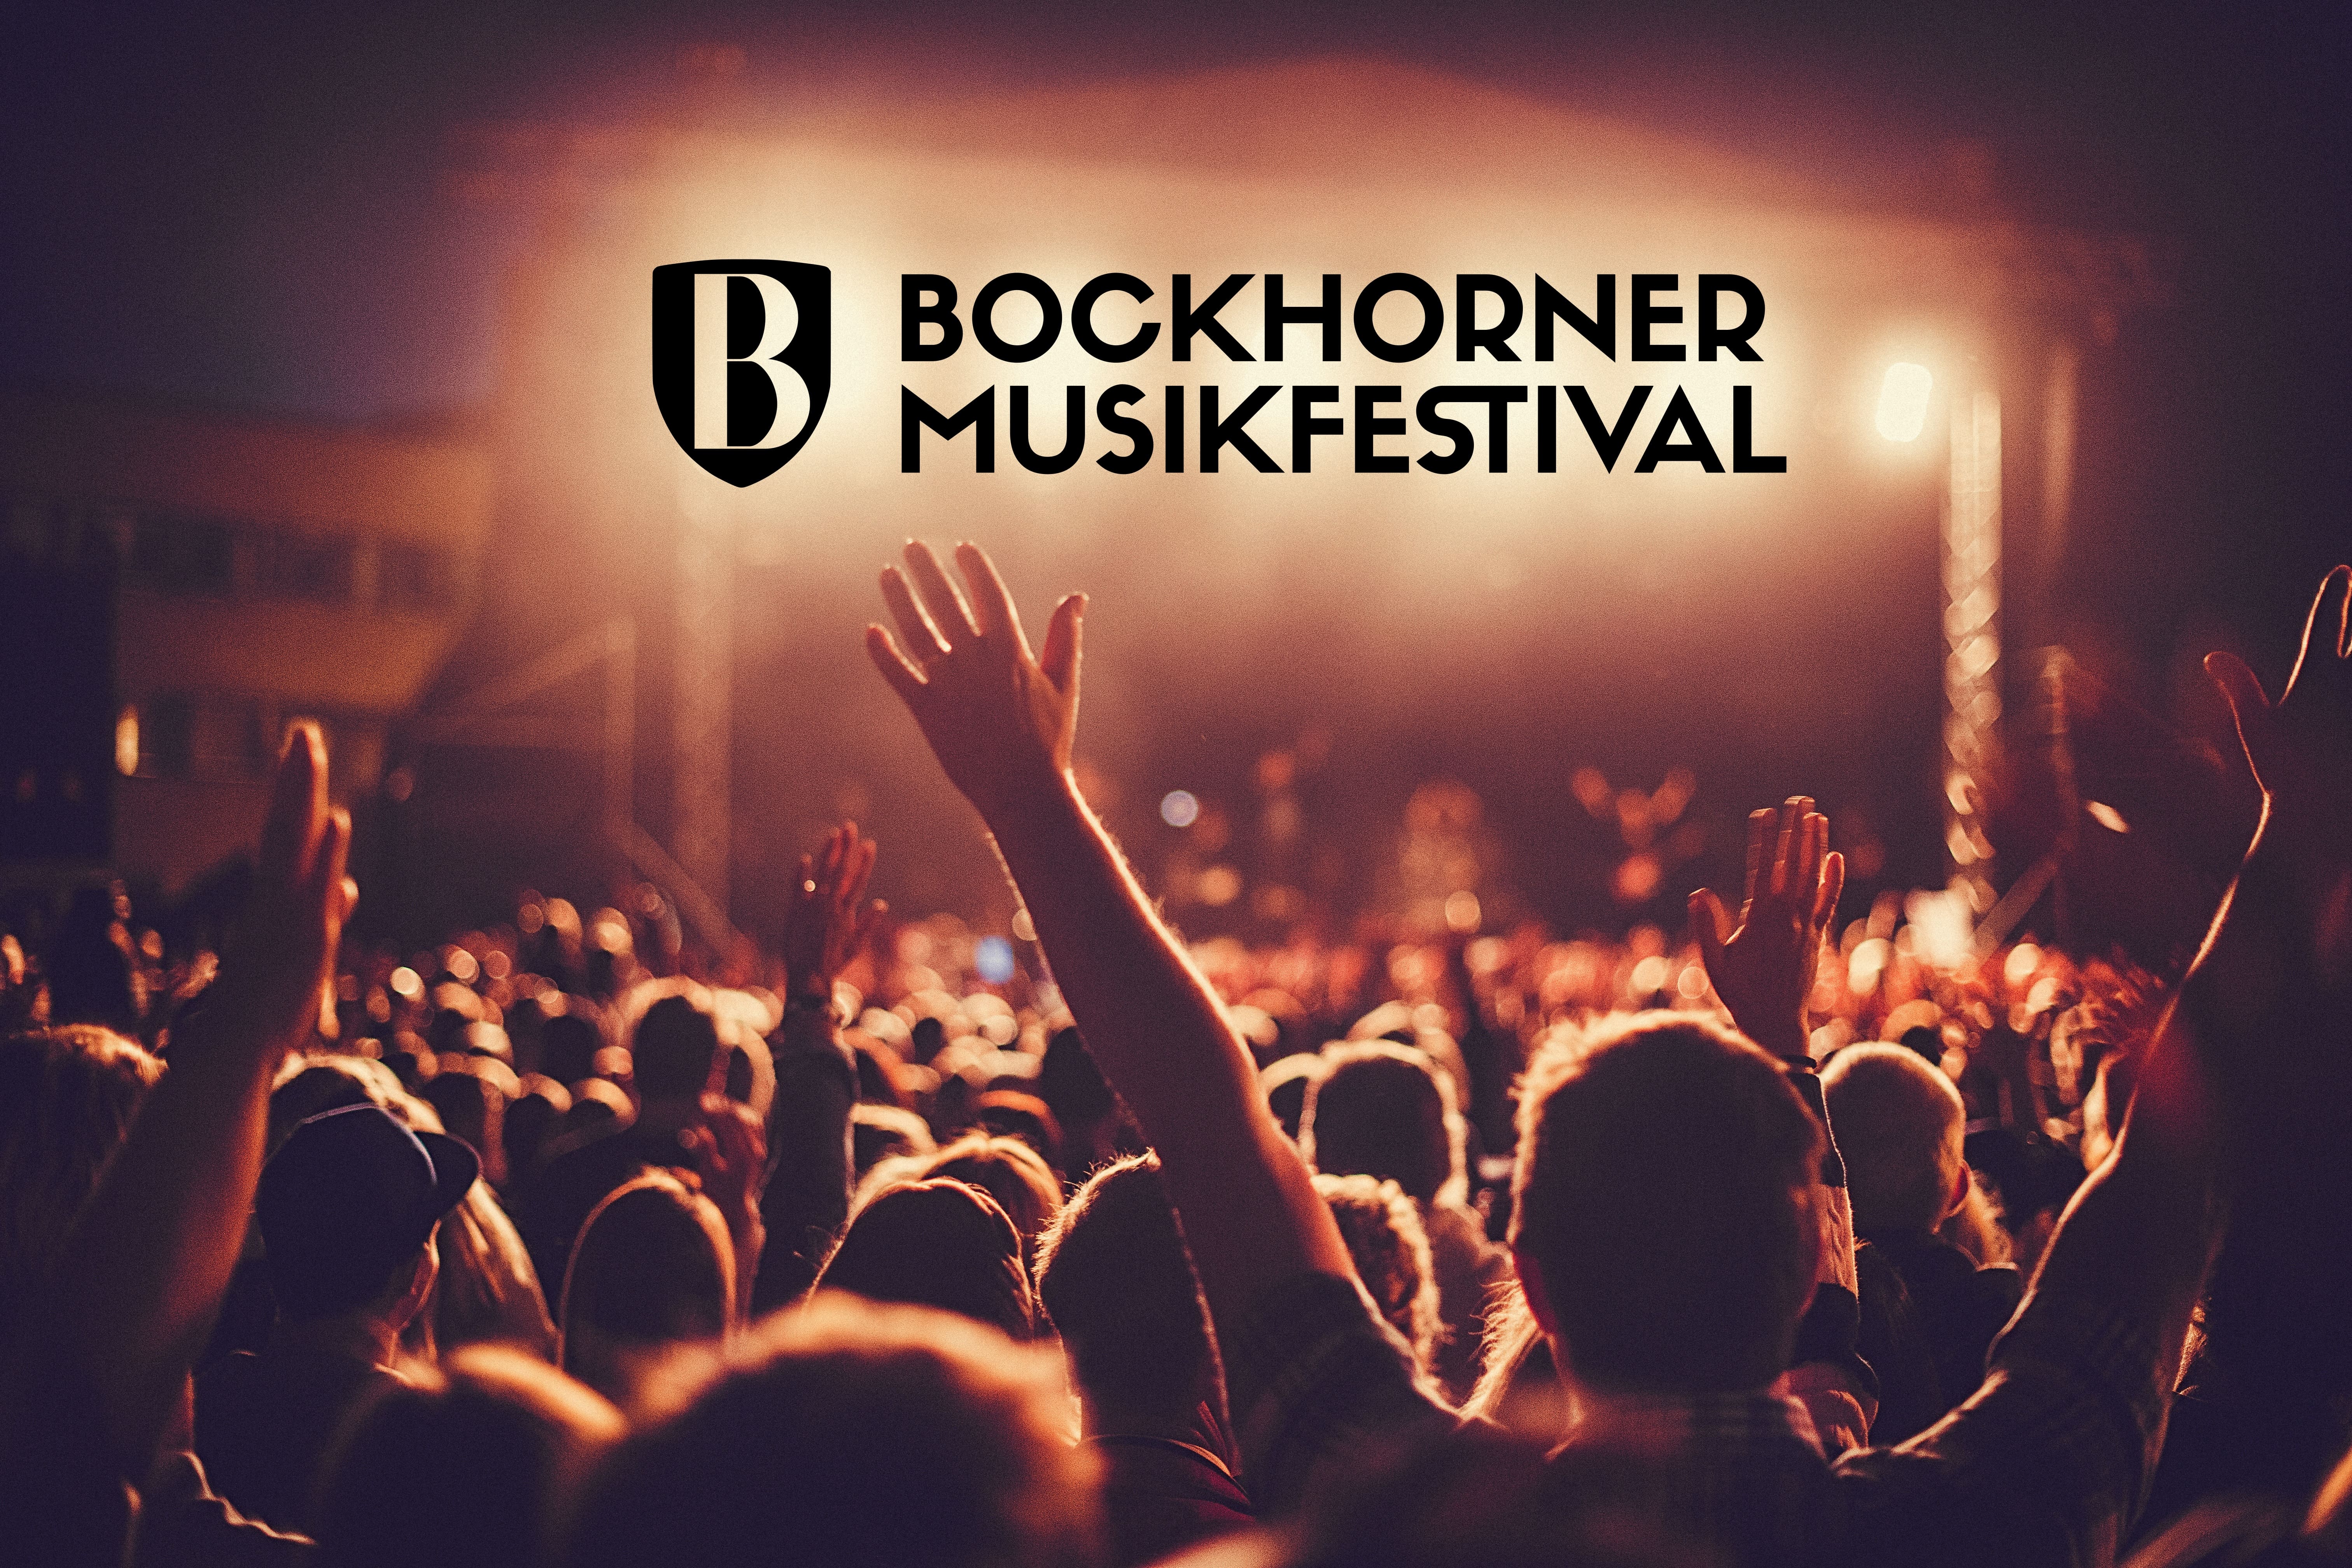 Bockhorner Musikfestival